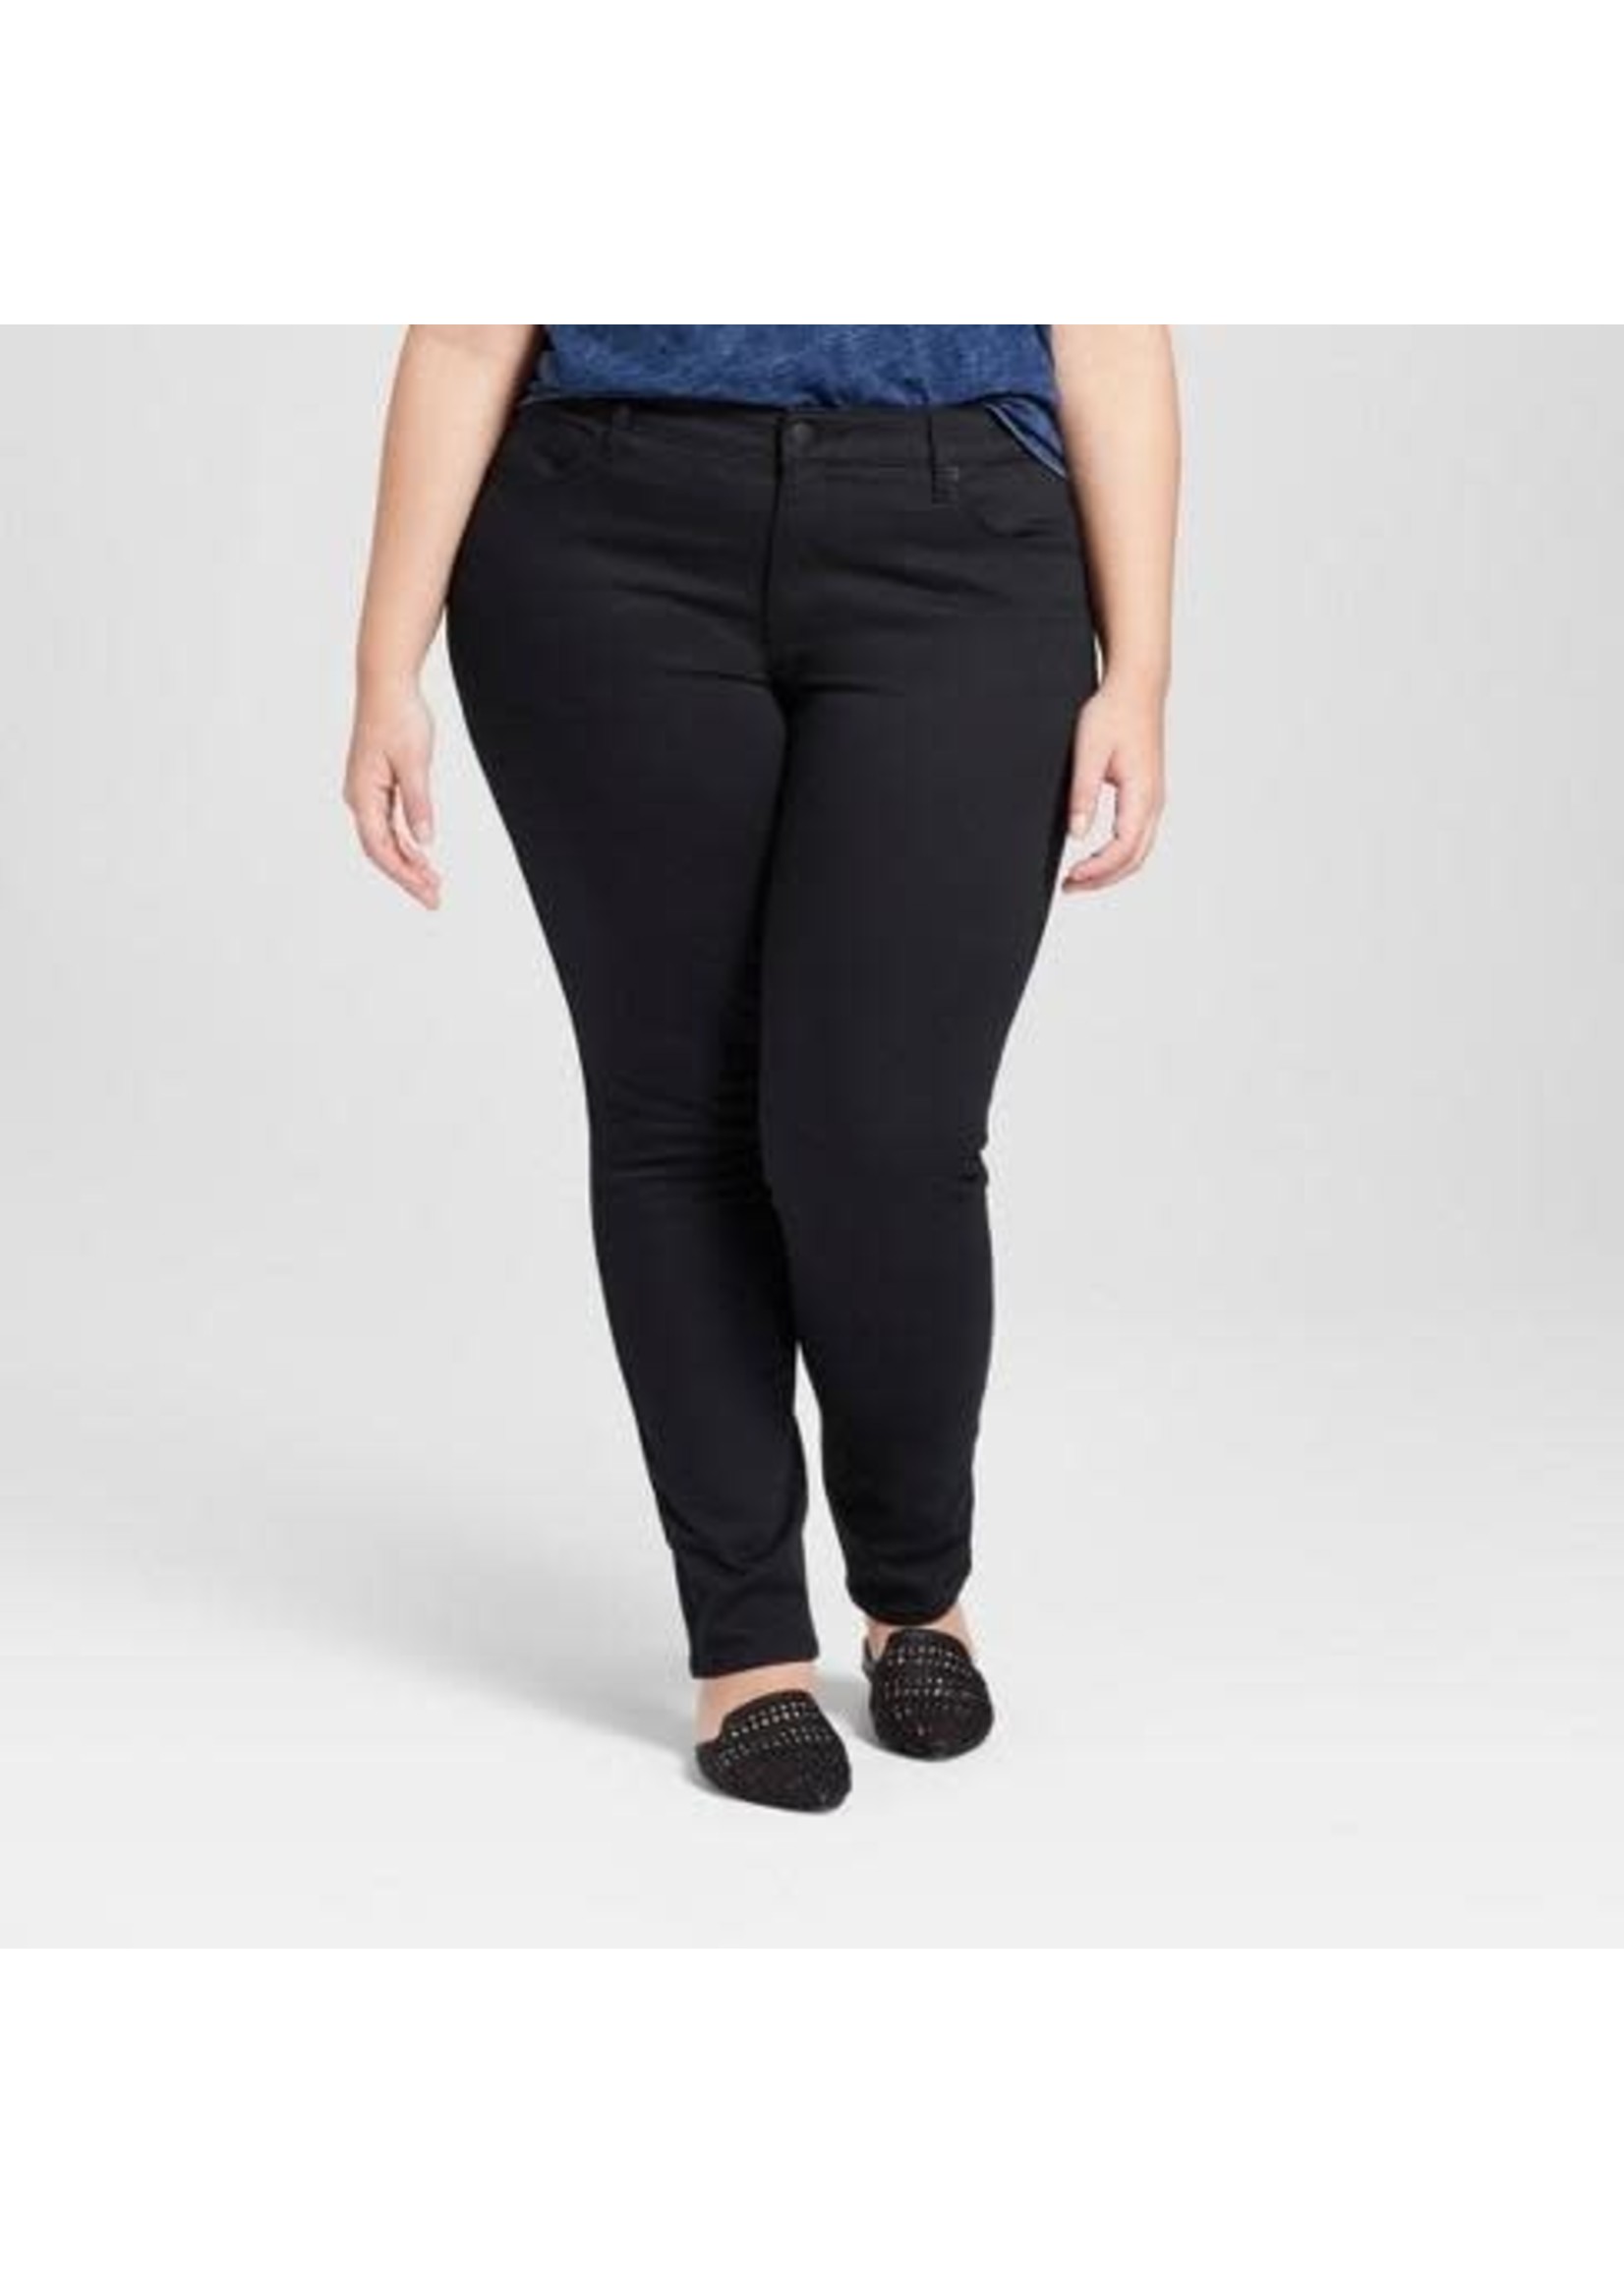 Women's Plus Size Cargo Skinny Leg Pants - Black - Curvy Sense